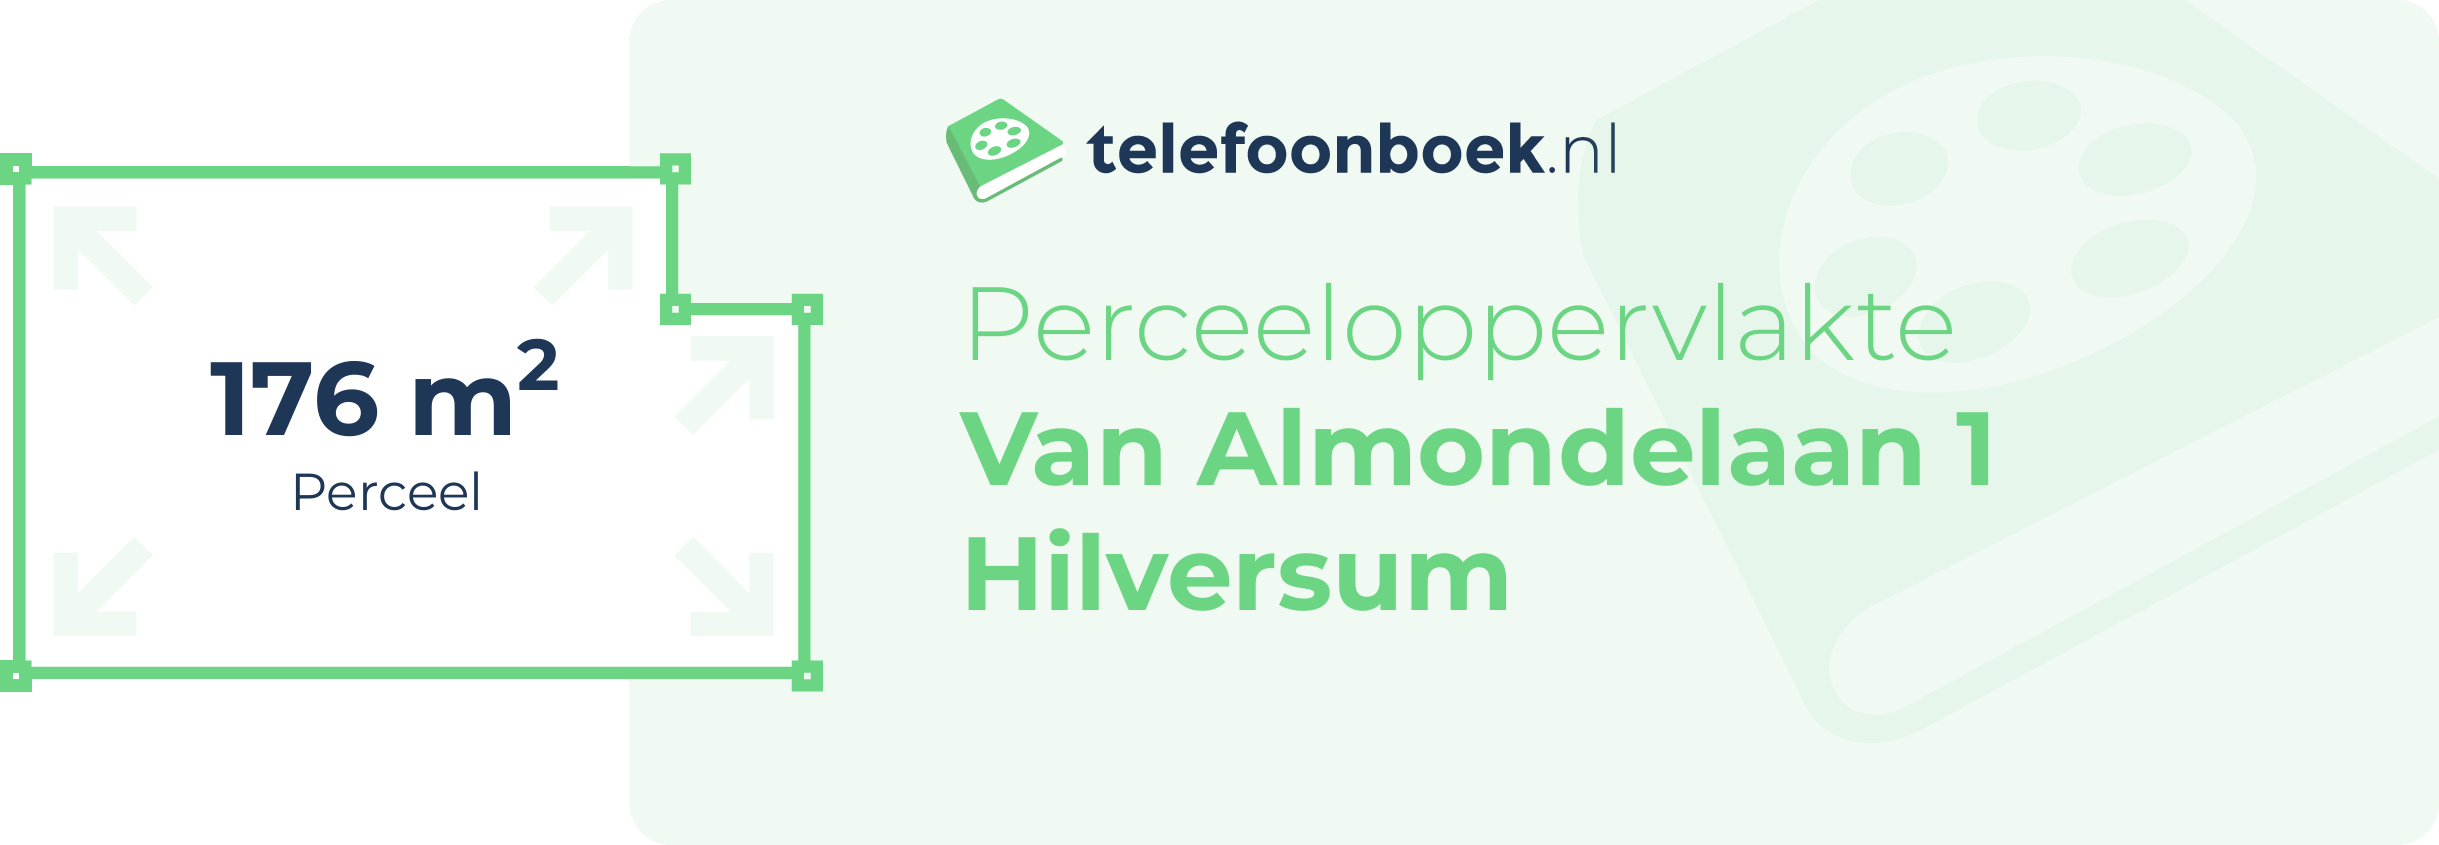 Perceeloppervlakte Van Almondelaan 1 Hilversum